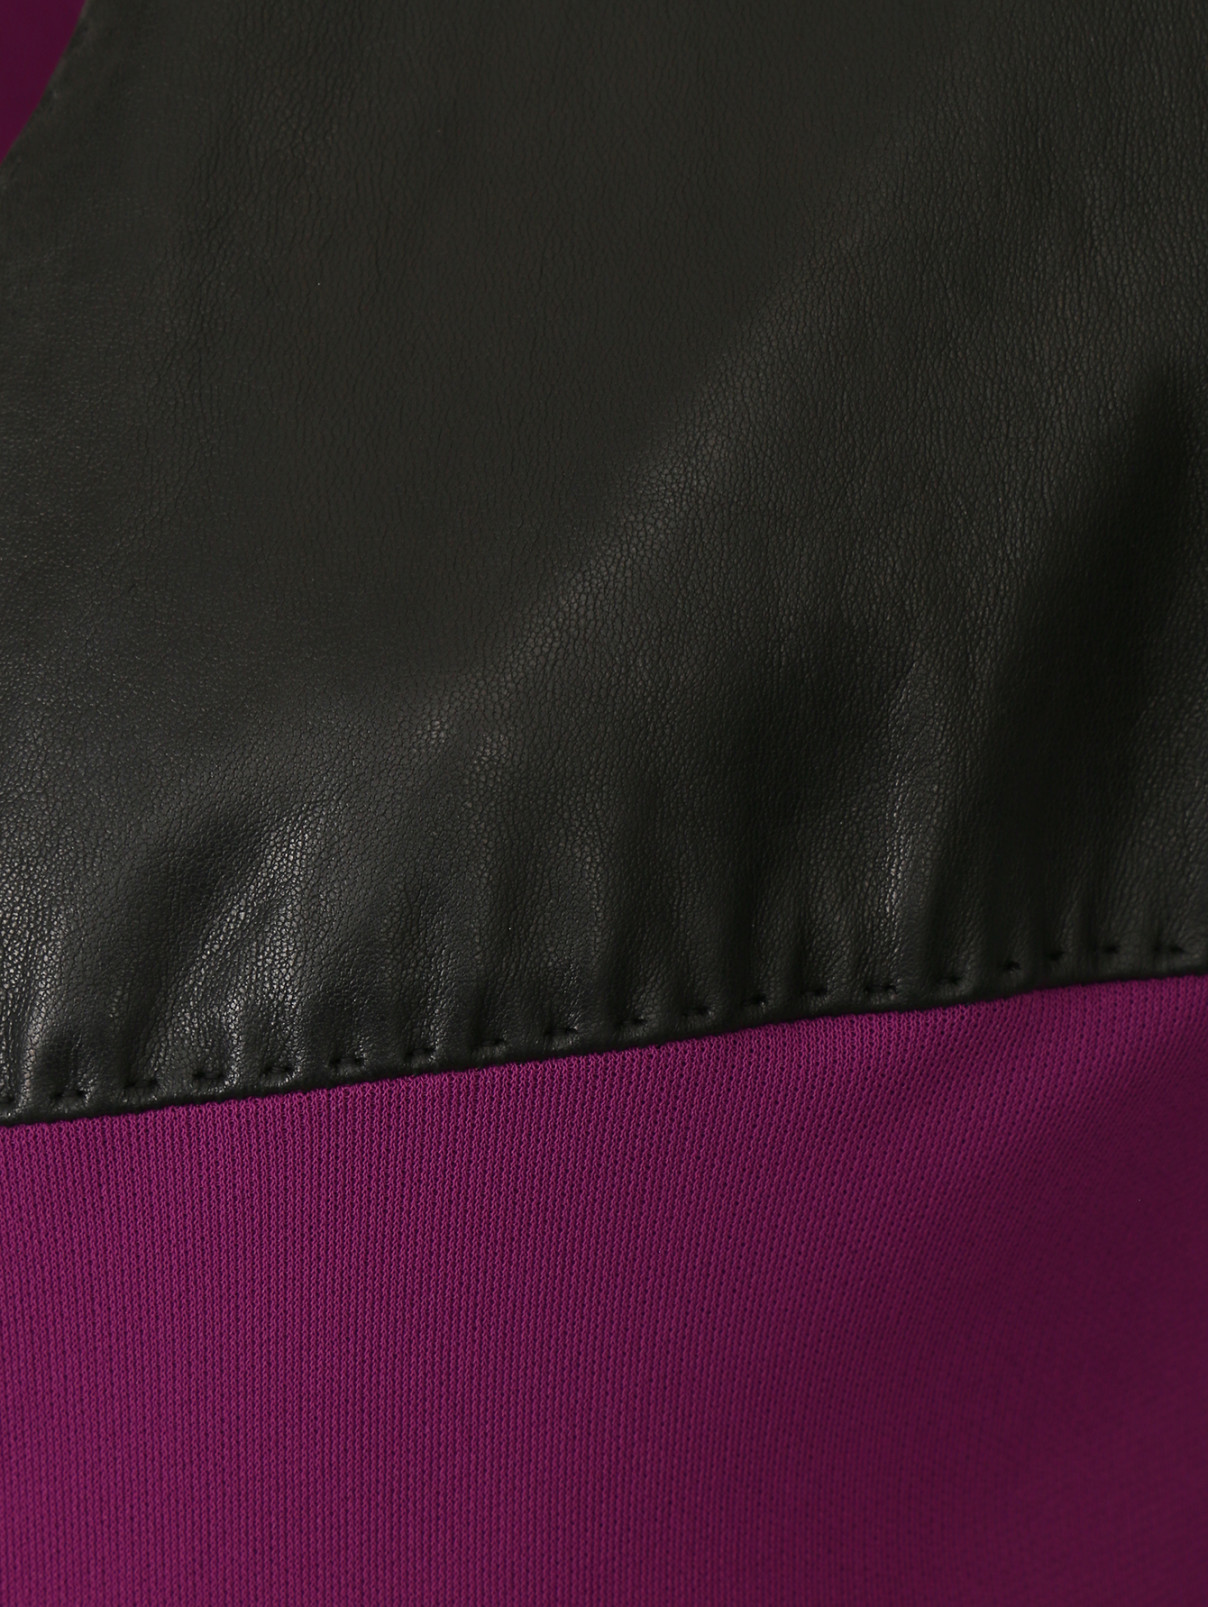 Платье с запахом и кожаными вставками Jean Paul Gaultier  –  Деталь1  – Цвет:  Фиолетовый